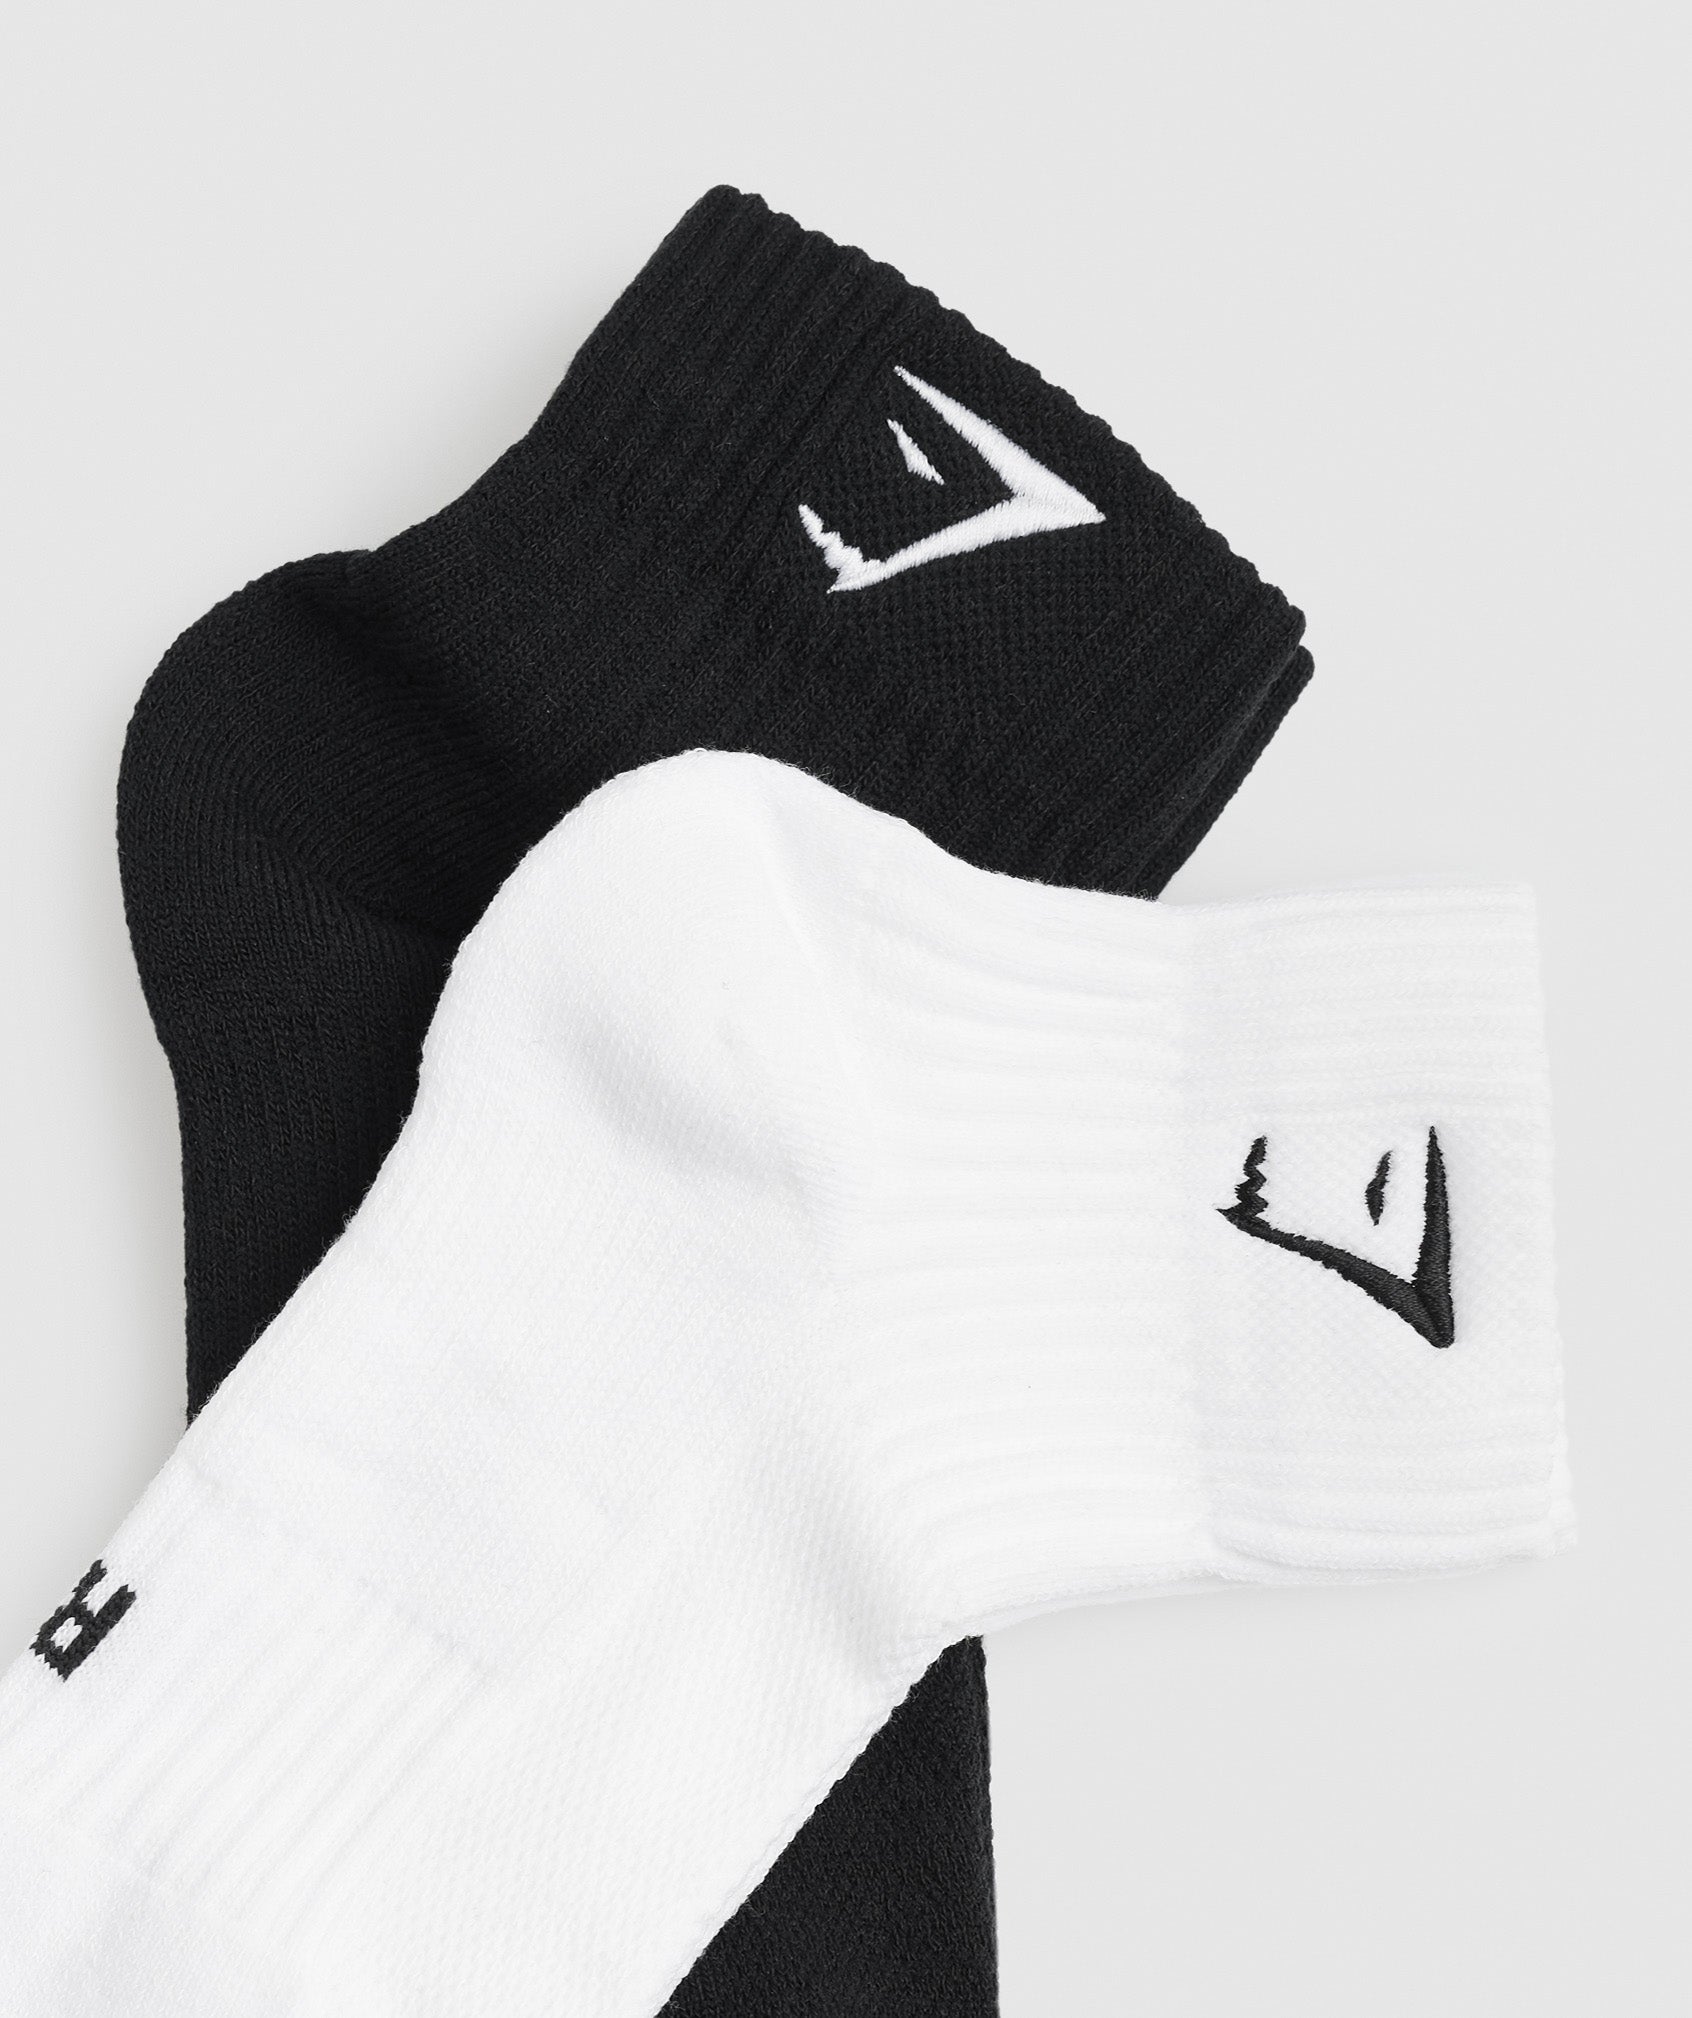 Sharkhead Embroidered Quarter Socks 2pk in White/Black